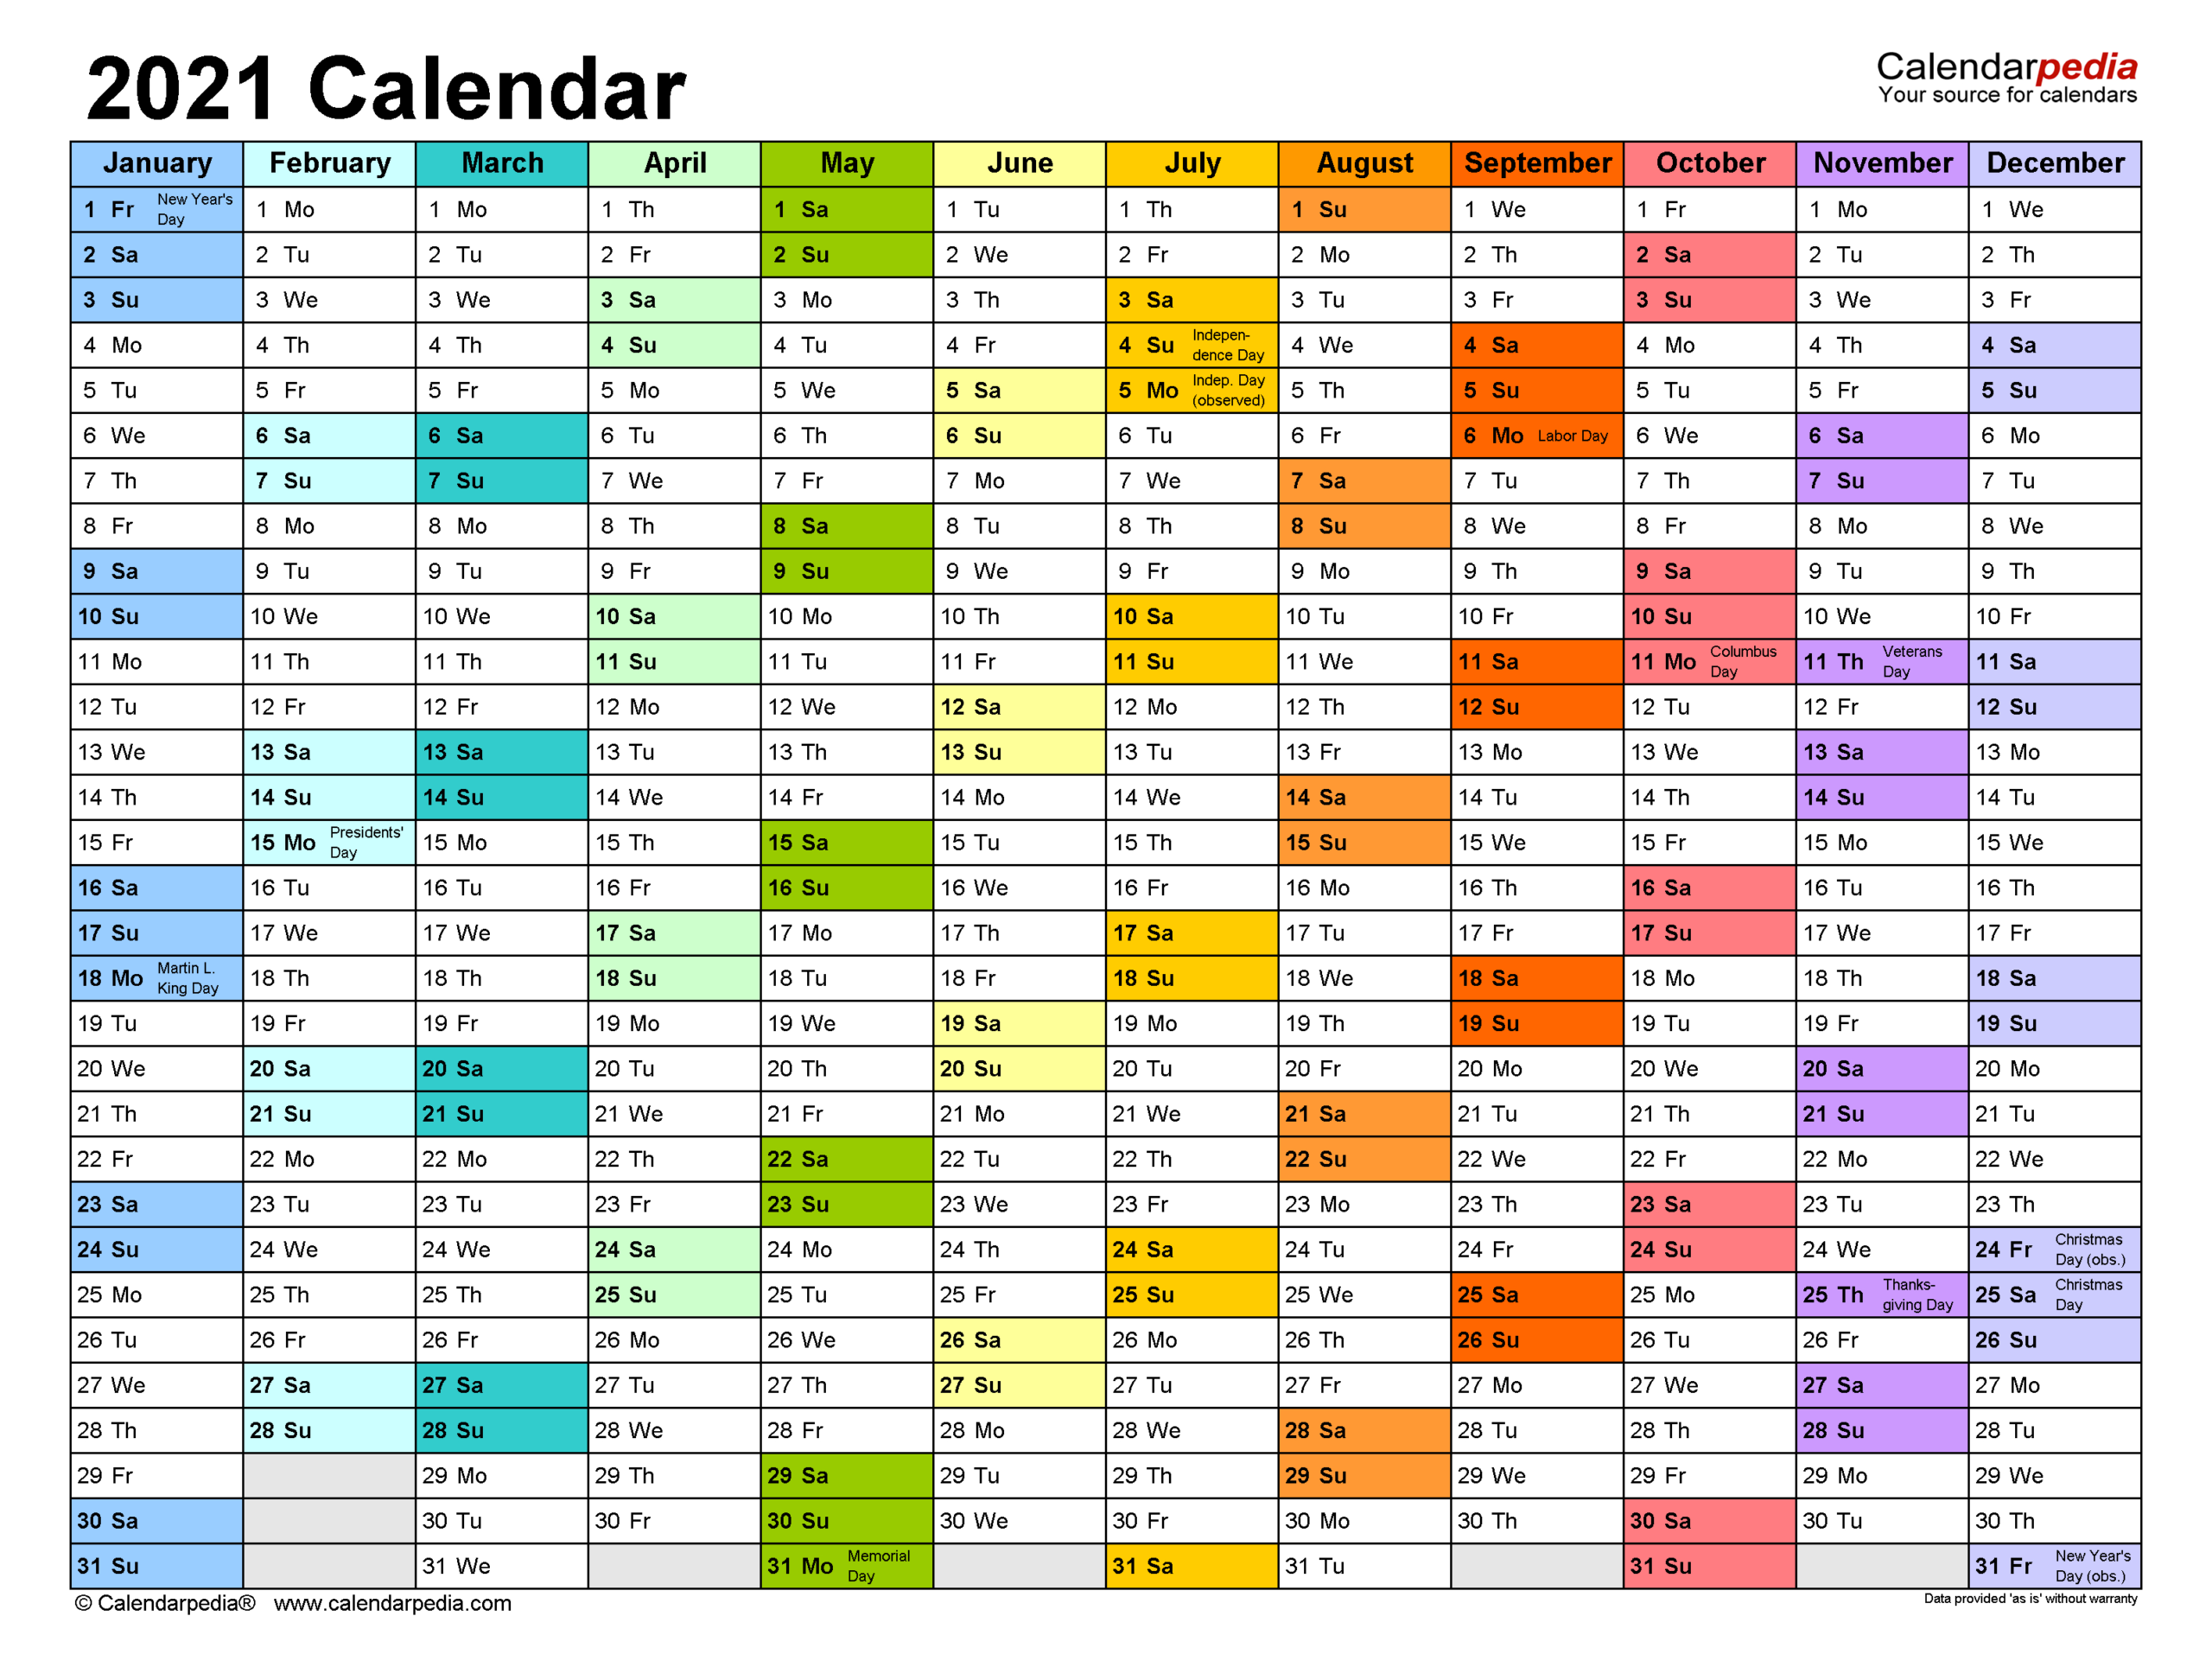 2021 Calendar Template Excel-2021 Calendar Template Word